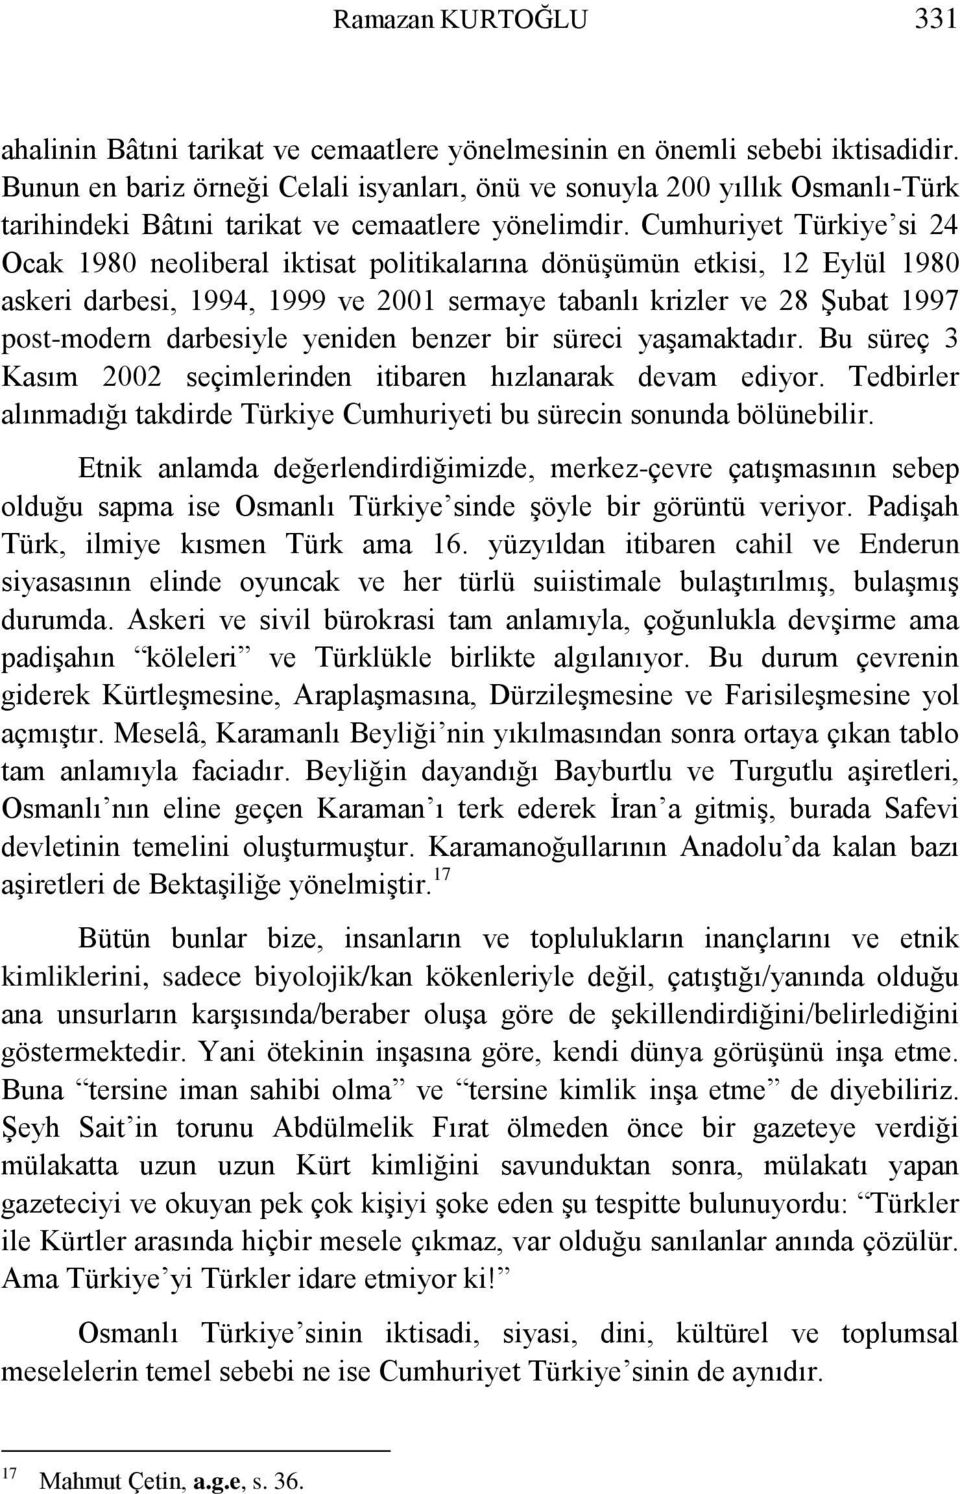 Cumhuriyet Türkiye si 24 Ocak 1980 neoliberal iktisat politikalarına dönüģümün etkisi, 12 Eylül 1980 askeri darbesi, 1994, 1999 ve 2001 sermaye tabanlı krizler ve 28 ġubat 1997 post-modern darbesiyle